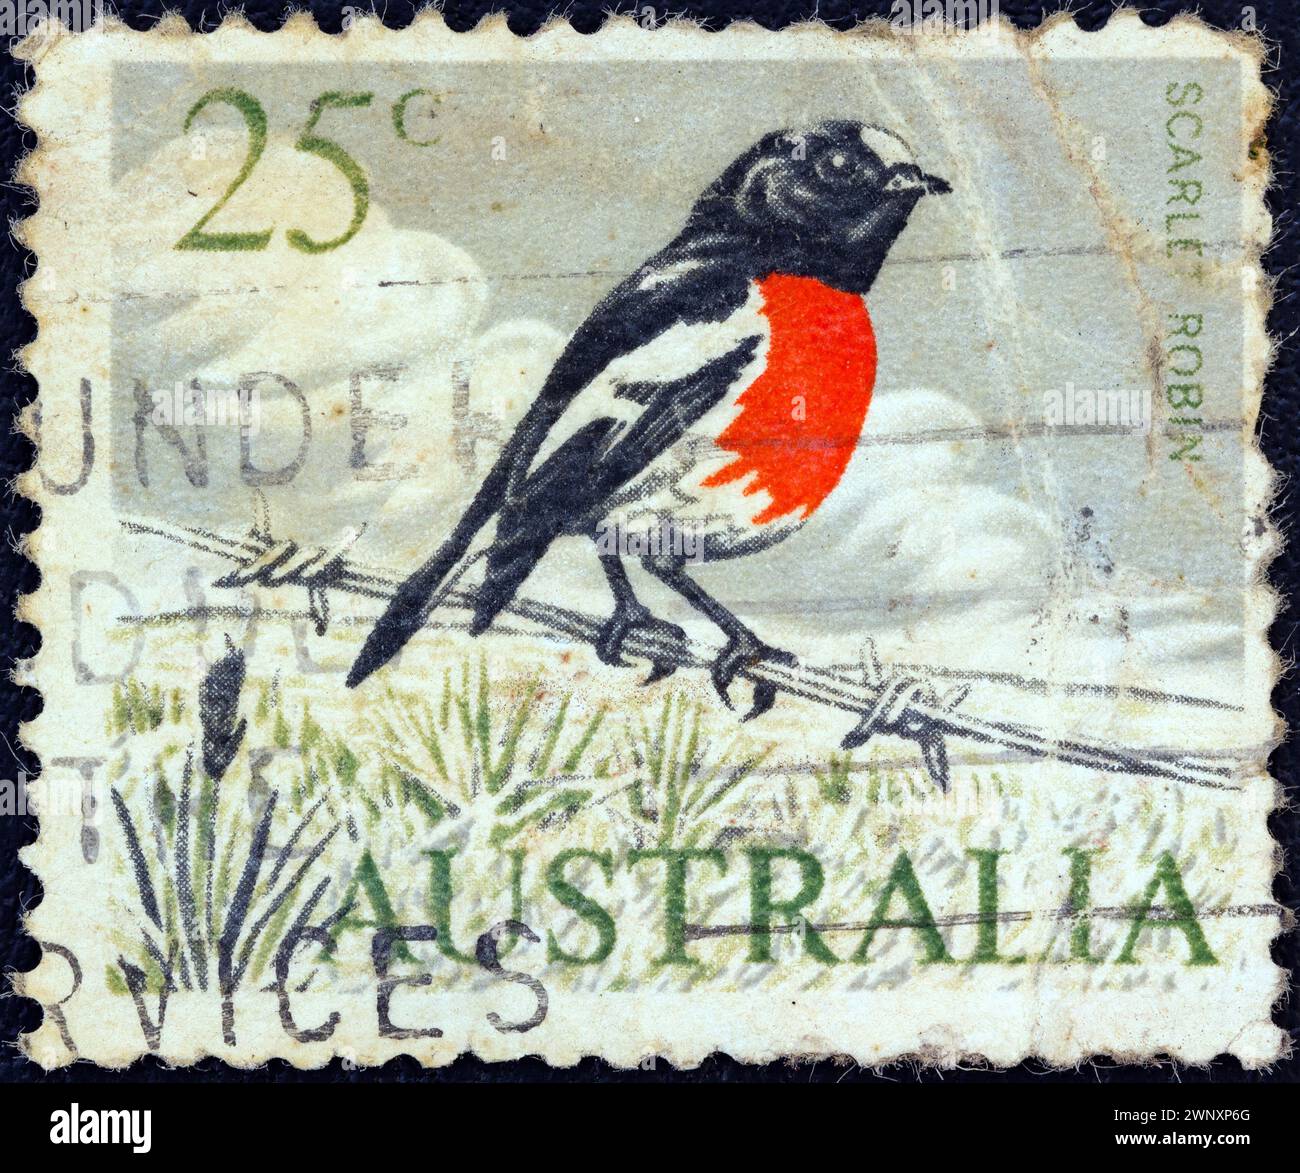 AUSTRALIEN - CA. 1966: Eine in Australien gedruckte Briefmarke zeigt einen rotkehlchen (Petroica boodang) Vogel, ca. 1966. Stockfoto